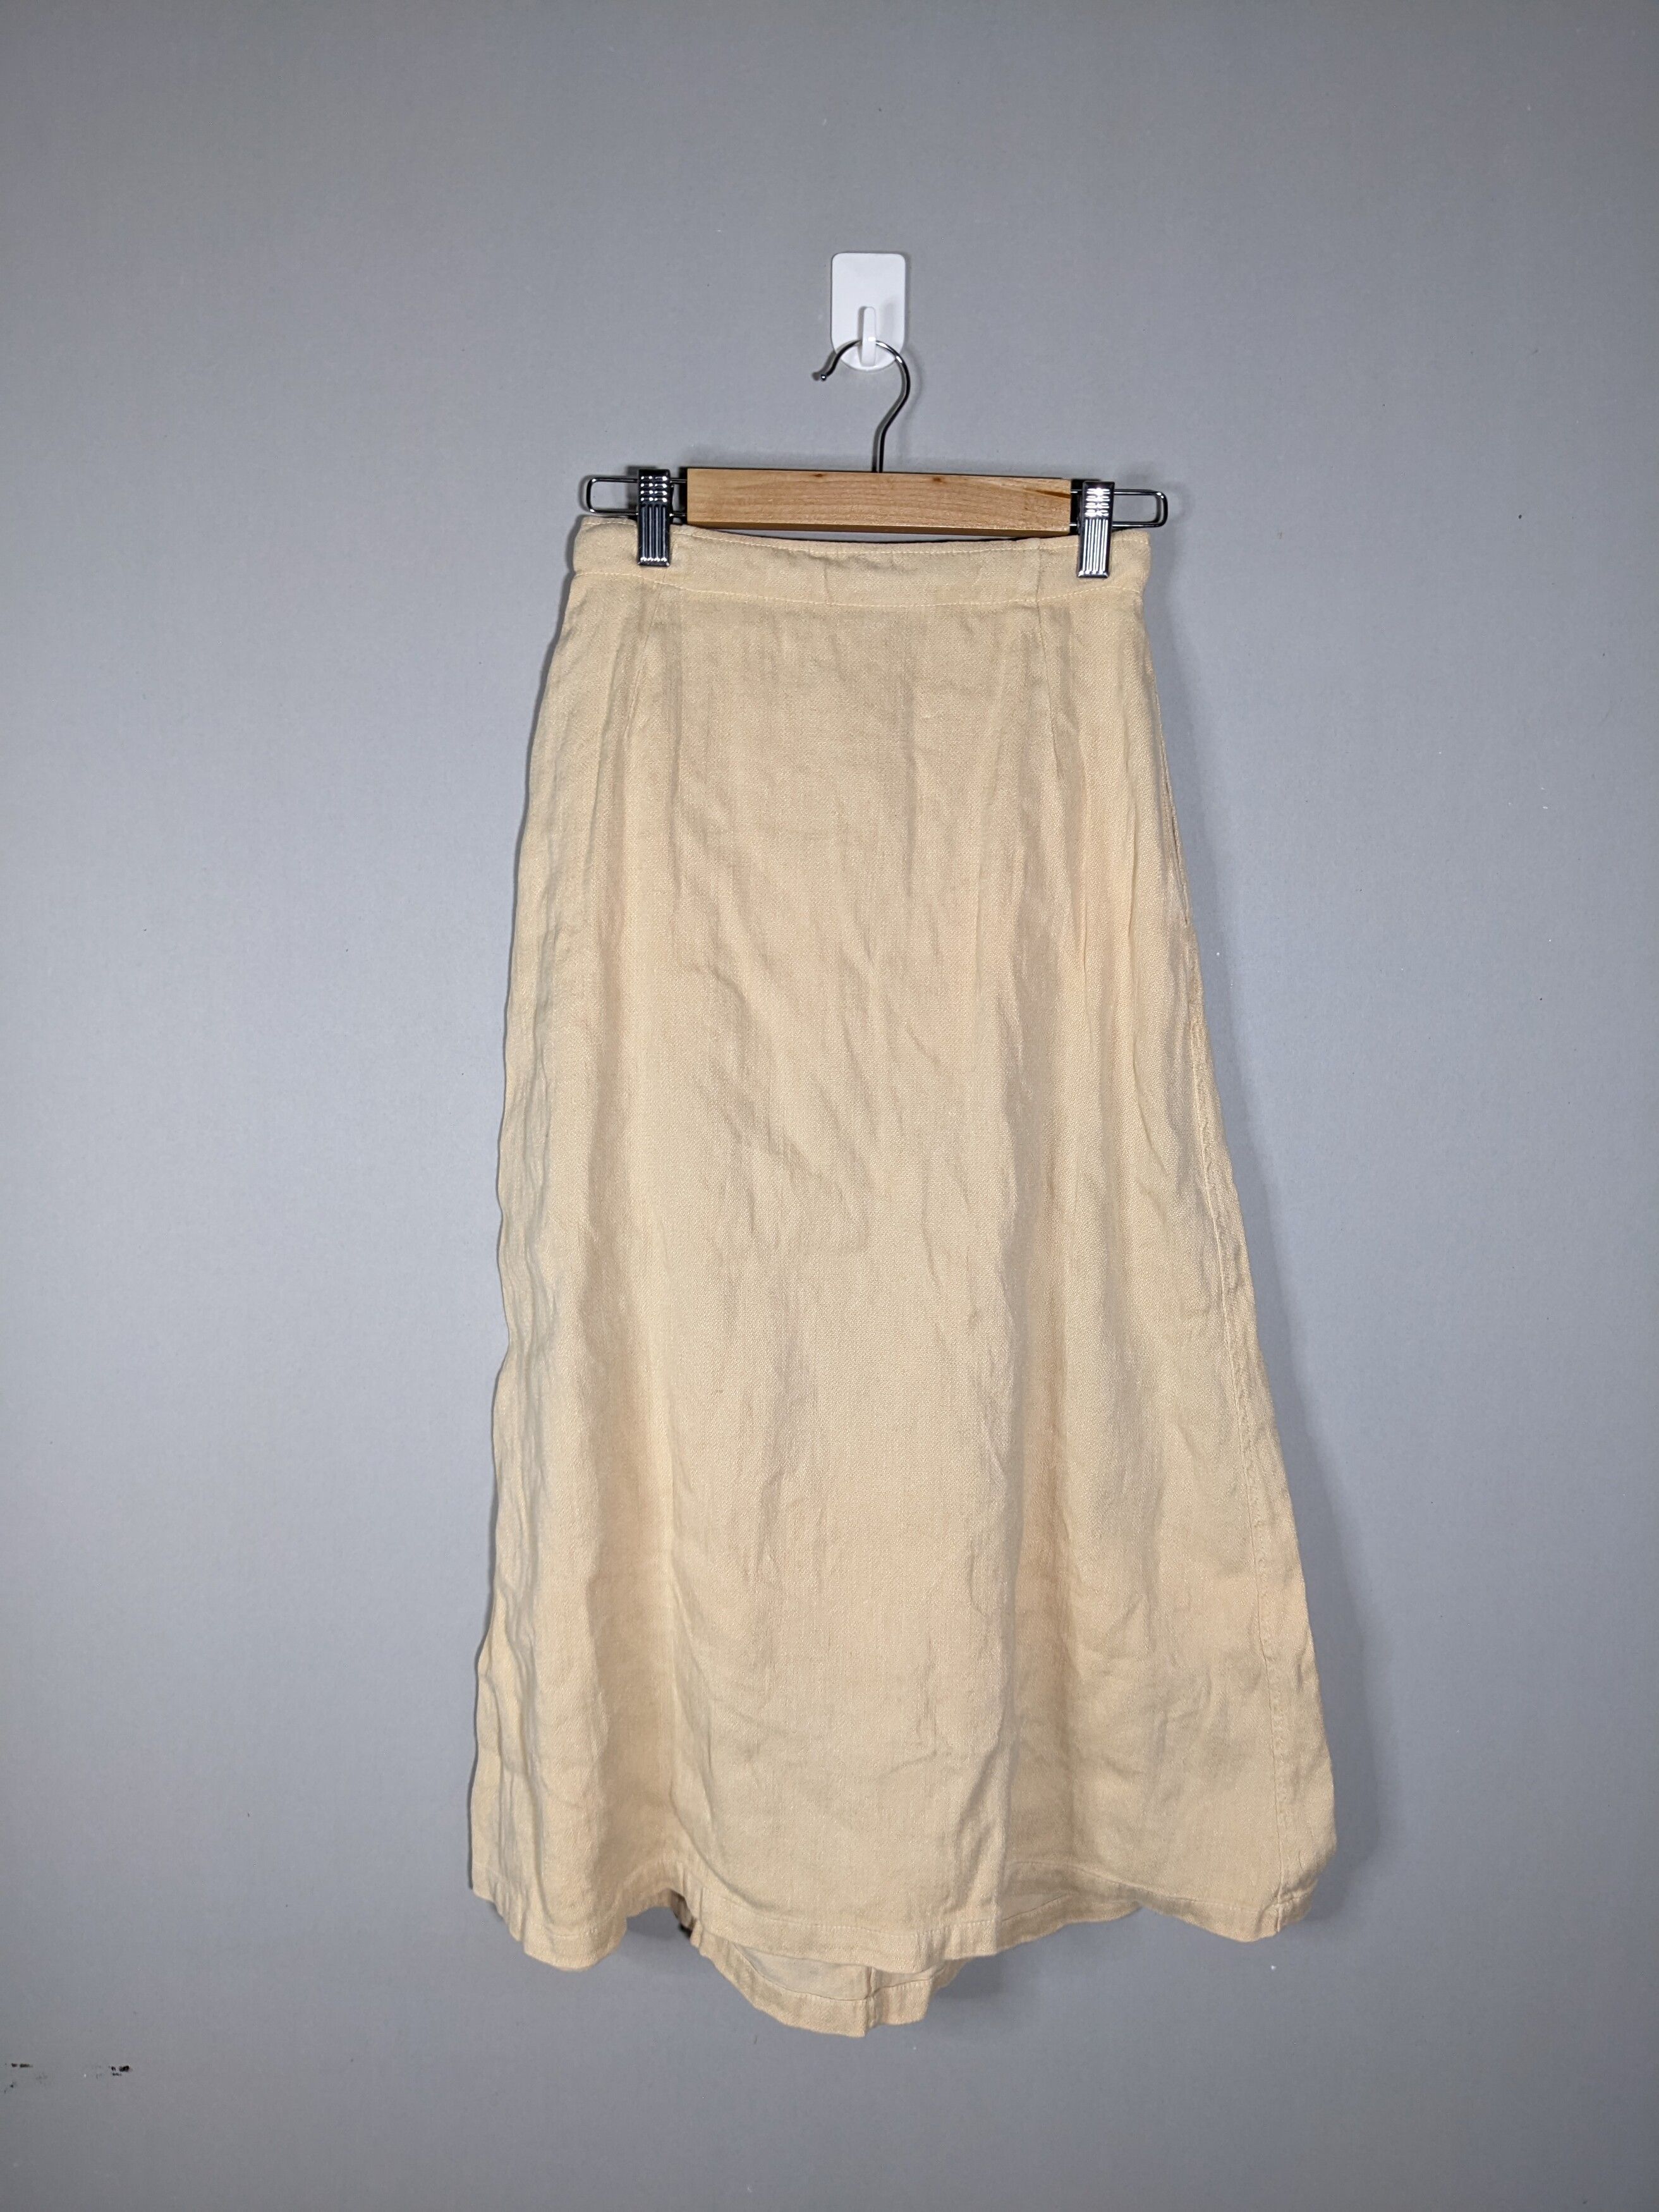 Vintage 45rpm Japan Designer Skirt With Belt - 2